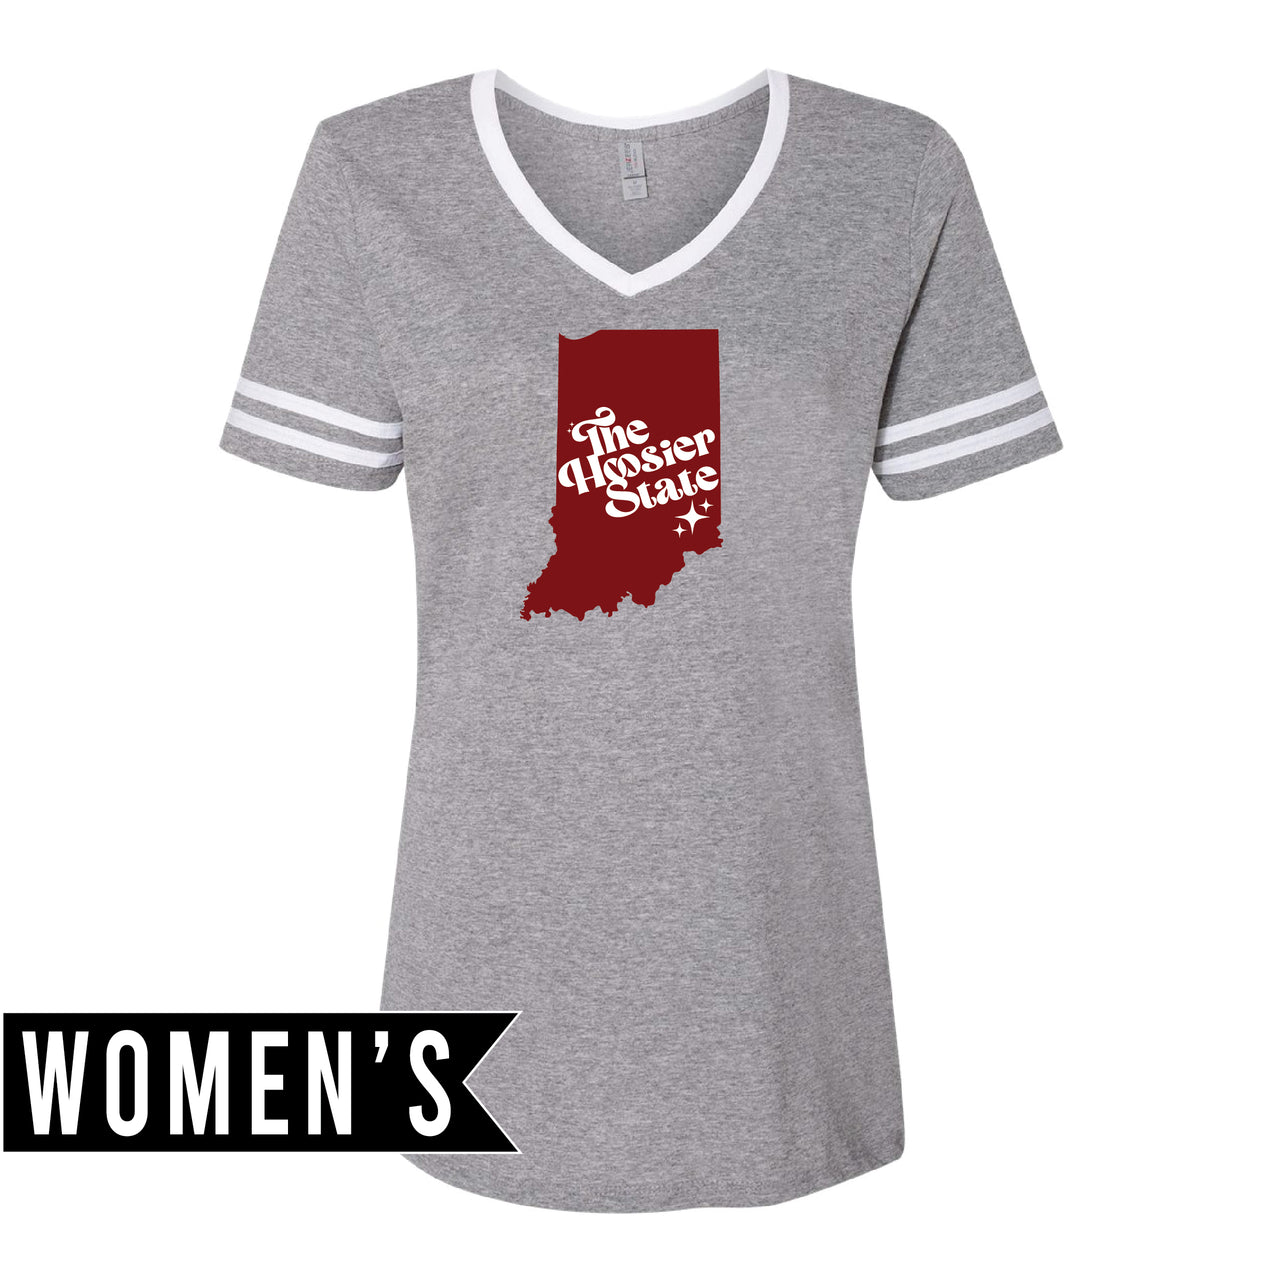 Women's Varsity Triblend V-Neck T-Shirt - Hoosier State